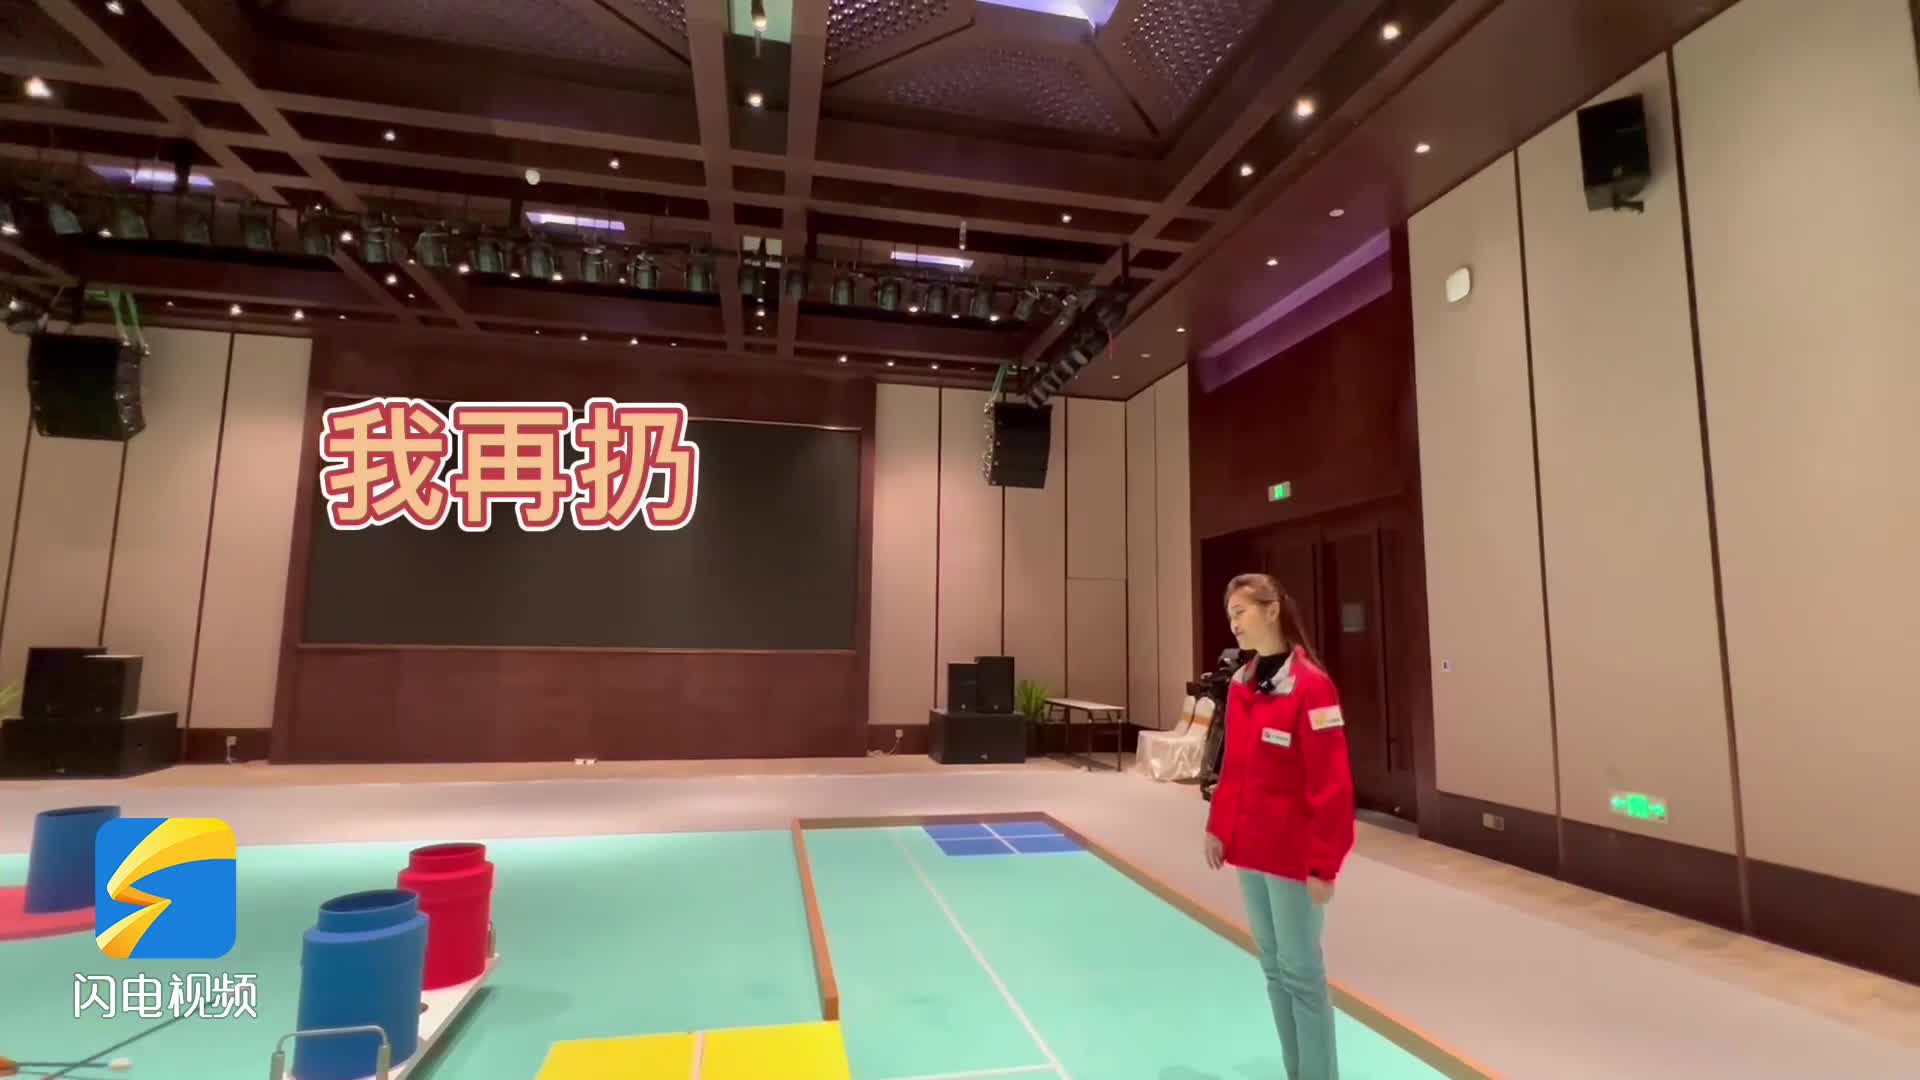 投壶场地板材铺三层、赛前得先脱鞋 记者探访2021年亚广联大学生机器人大赛